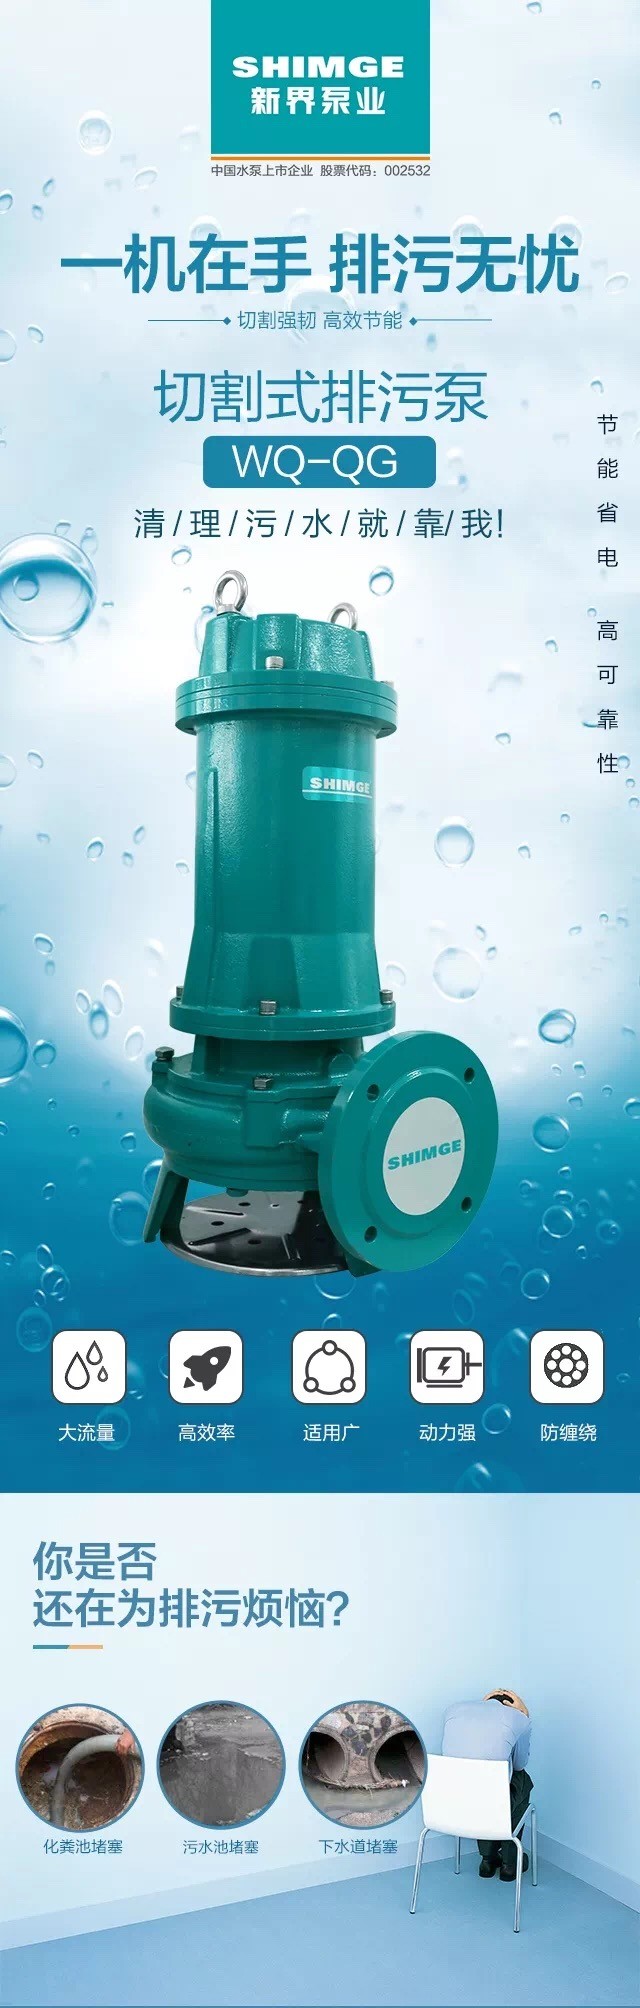 新界水泵切割式污水泵380V工业污水潜水泵家用化粪池抽粪排污泵详情1